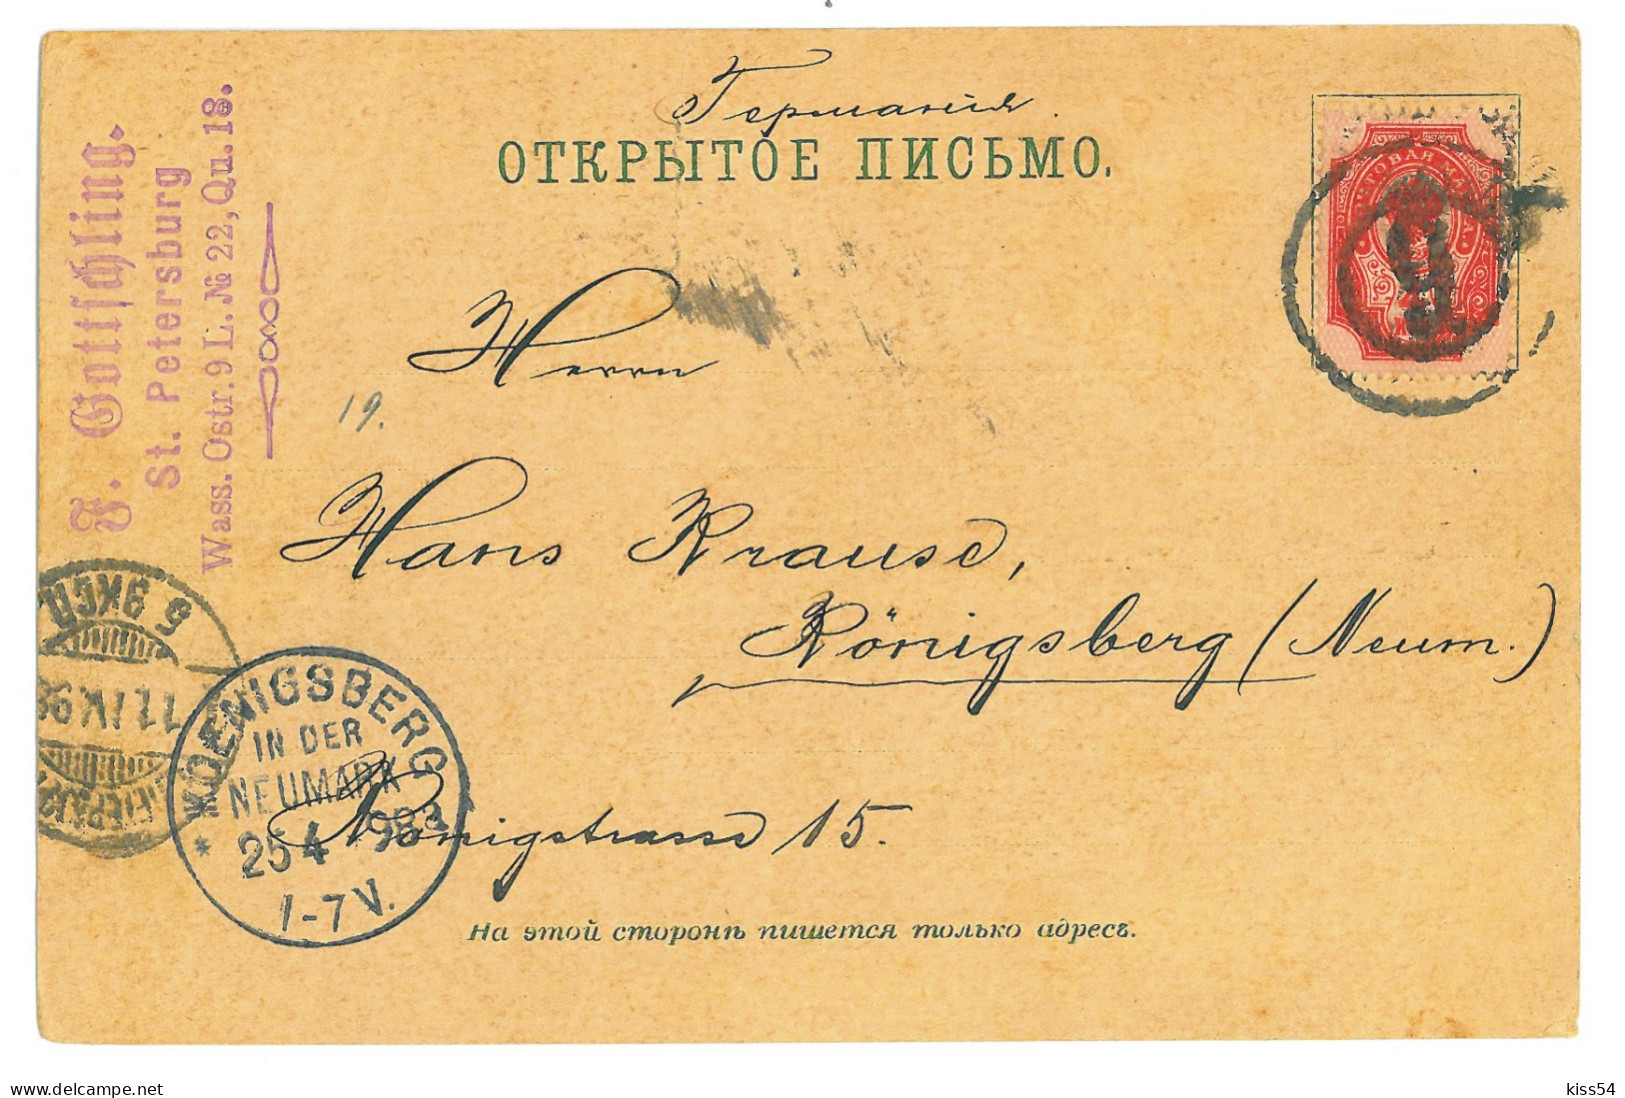 RUS 93 - 22250 SAINT PETERSBURG, Litho, Russia - Old Postcard - Used - 1898 - Russia